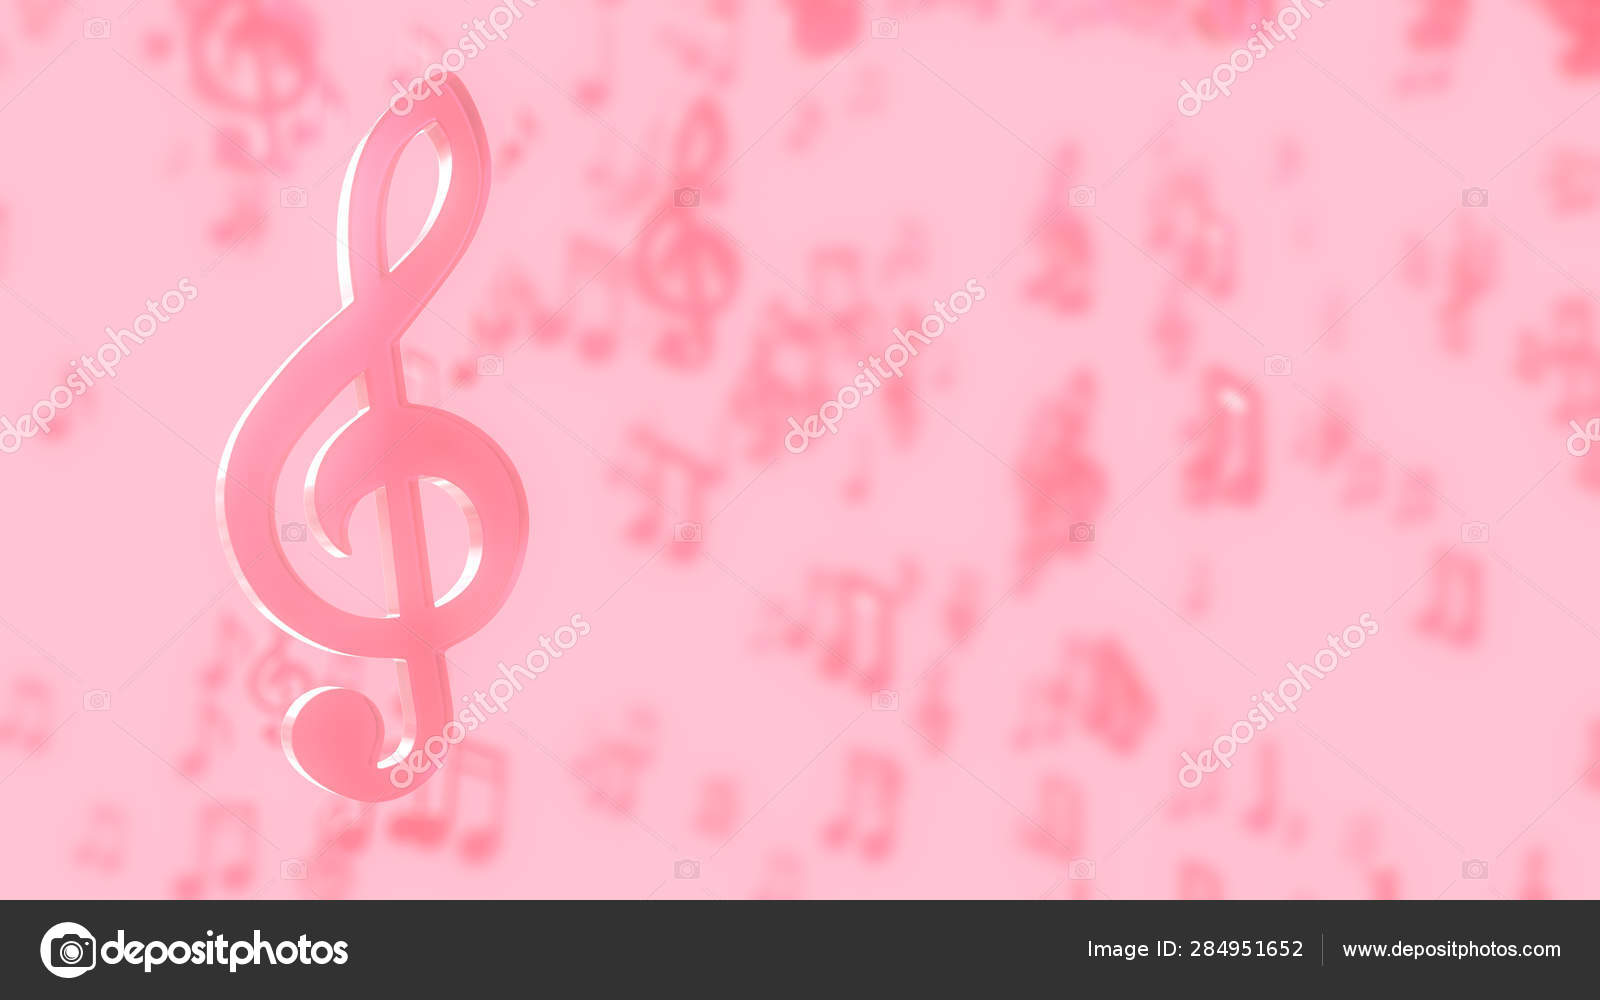 Nếu bạn đang tìm kiếm một bức hình nền đơn giản nhưng cực kỳ bắt mắt thì hãy đến với Pink musical notes on pink pastel color background. Với những nốt nhạc màu hồng trên nền màu pastel, bức ảnh sẽ giúp bạn thư giãn và tận hưởng cuộc sống với những giai điệu tuyệt vời.